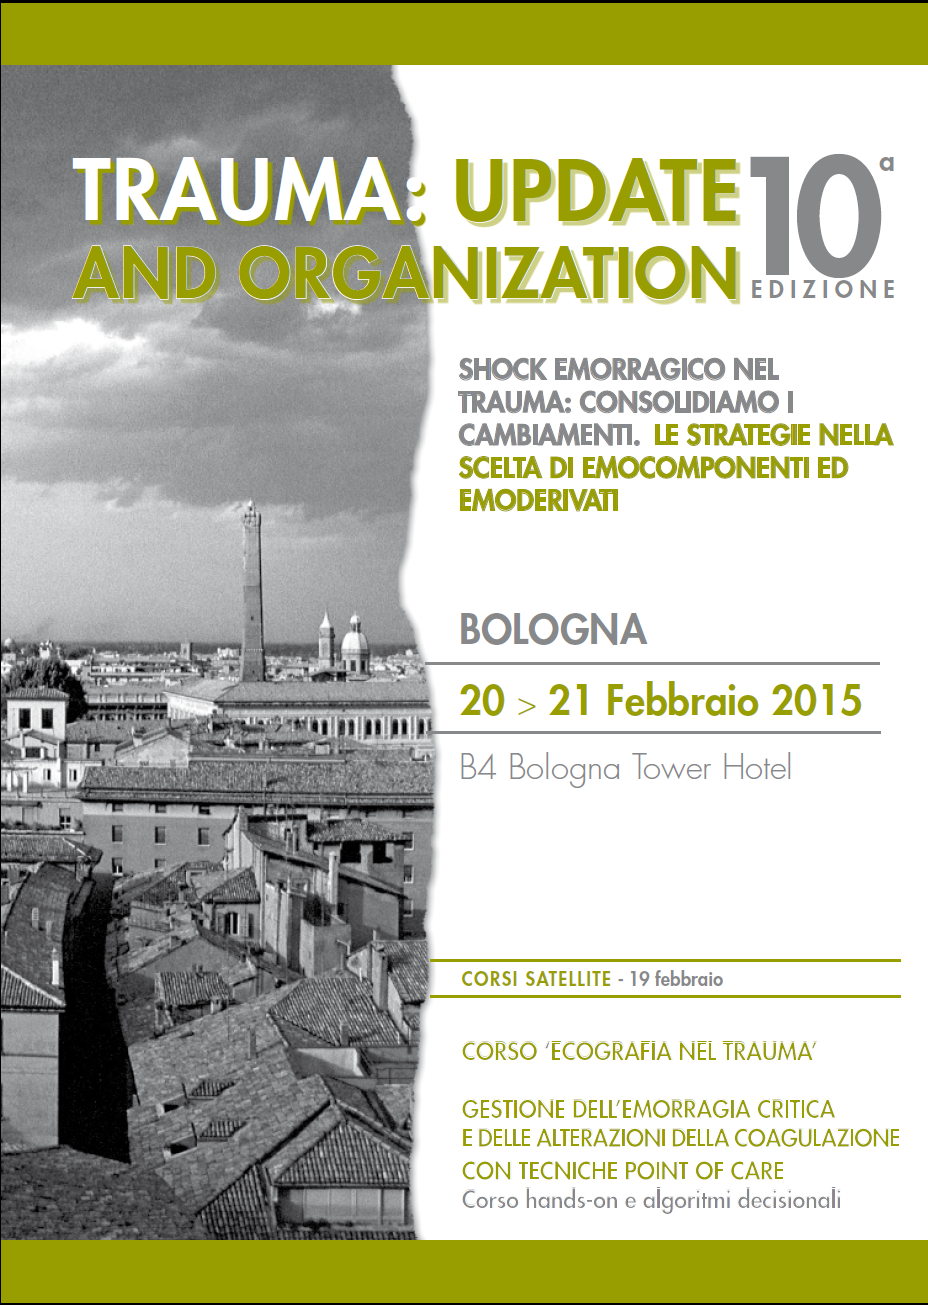 Trauma:update and organization - 10^ Edizione 